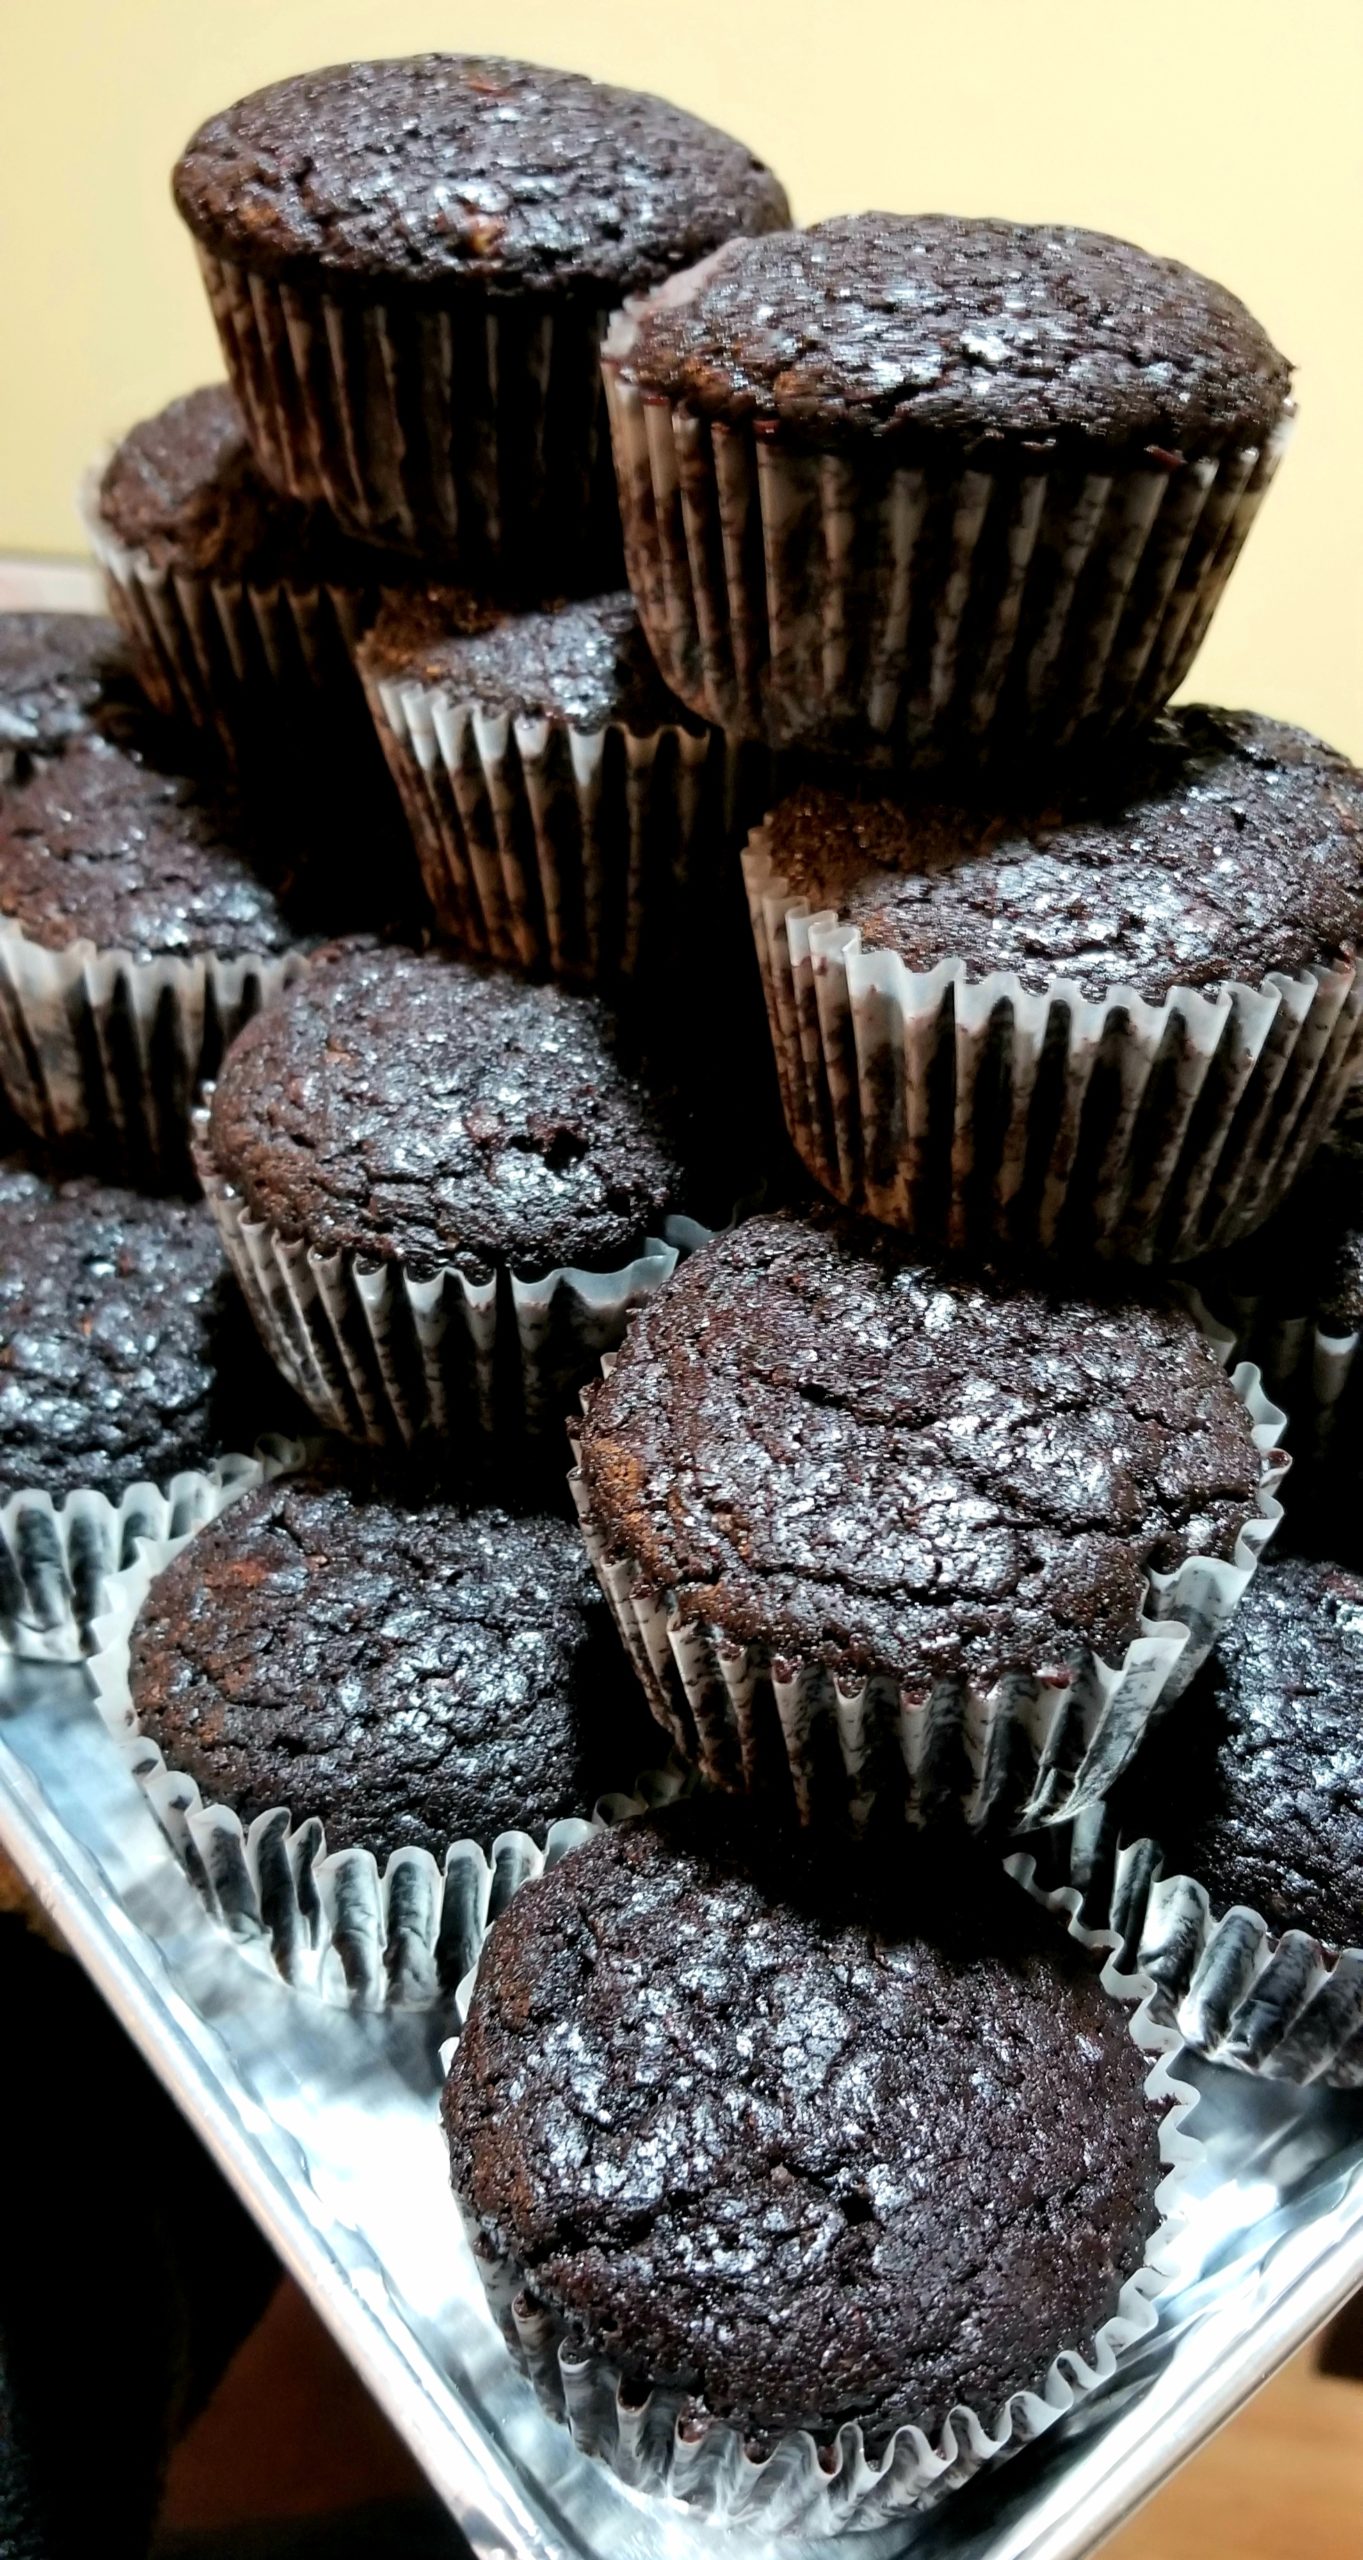 Jessica Craig's chocolate chunk muffins.